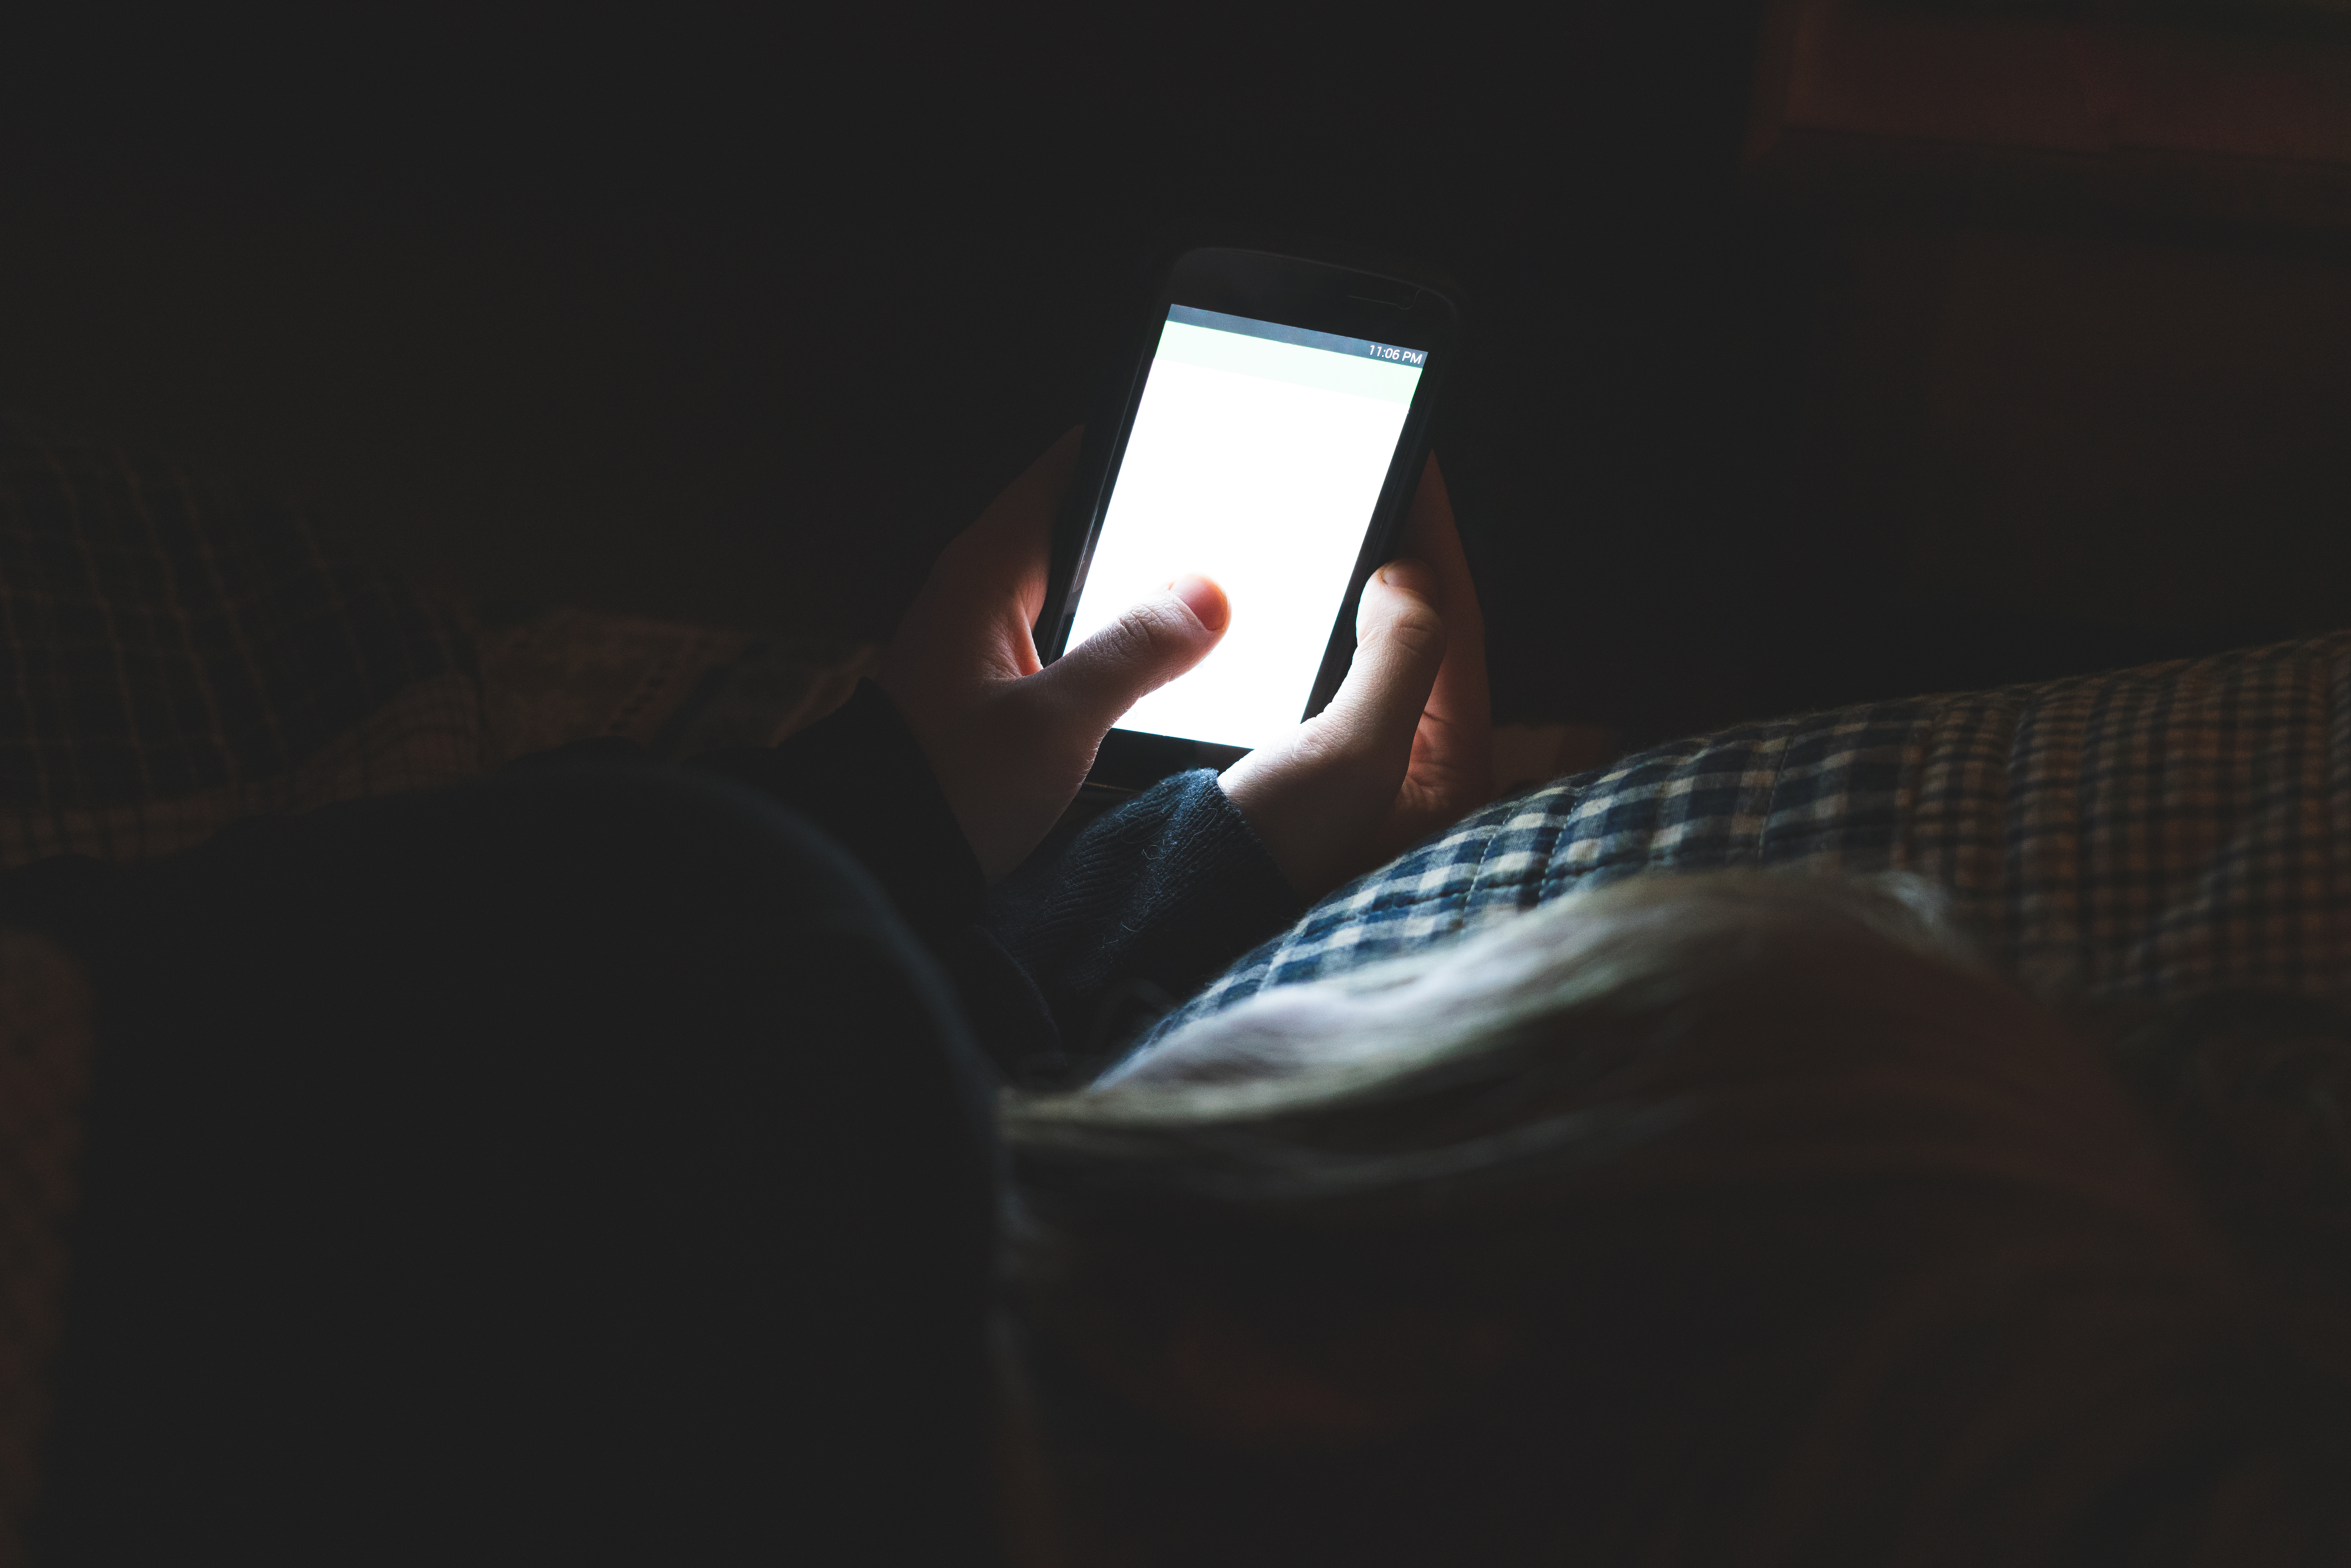 Eine Person hält ein Smartphone in einem dunklen Raum | Quelle: Shutterstock